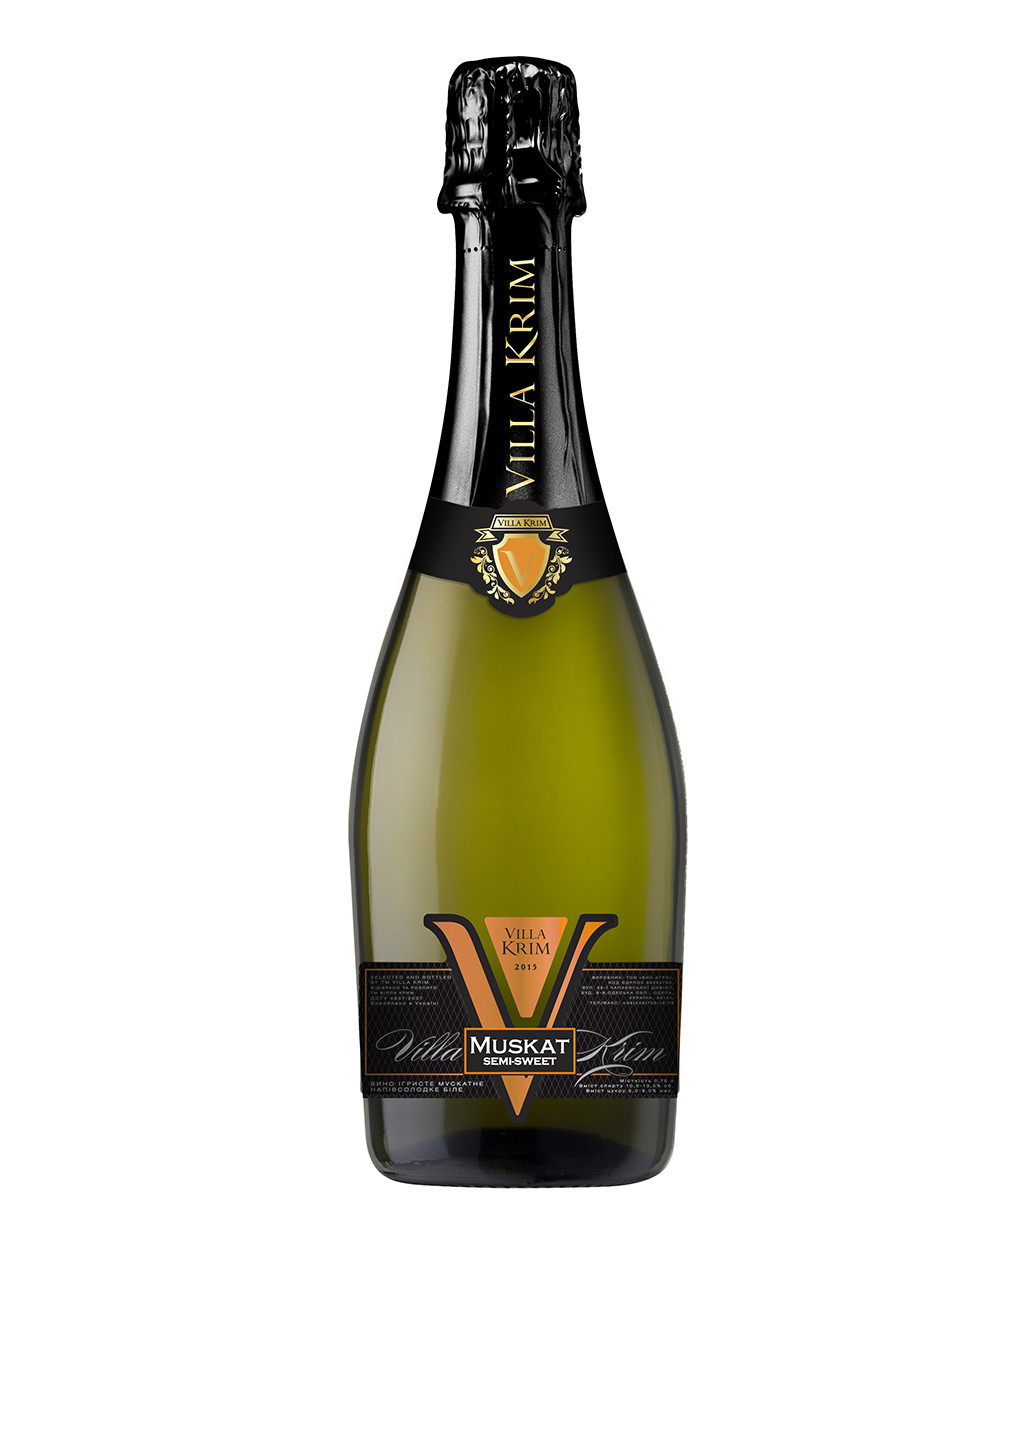 Вино игристое мускатное полусладкое белое, 0,75 л Villa Krim шампанское мускатное п/сладкое белое (224781326)